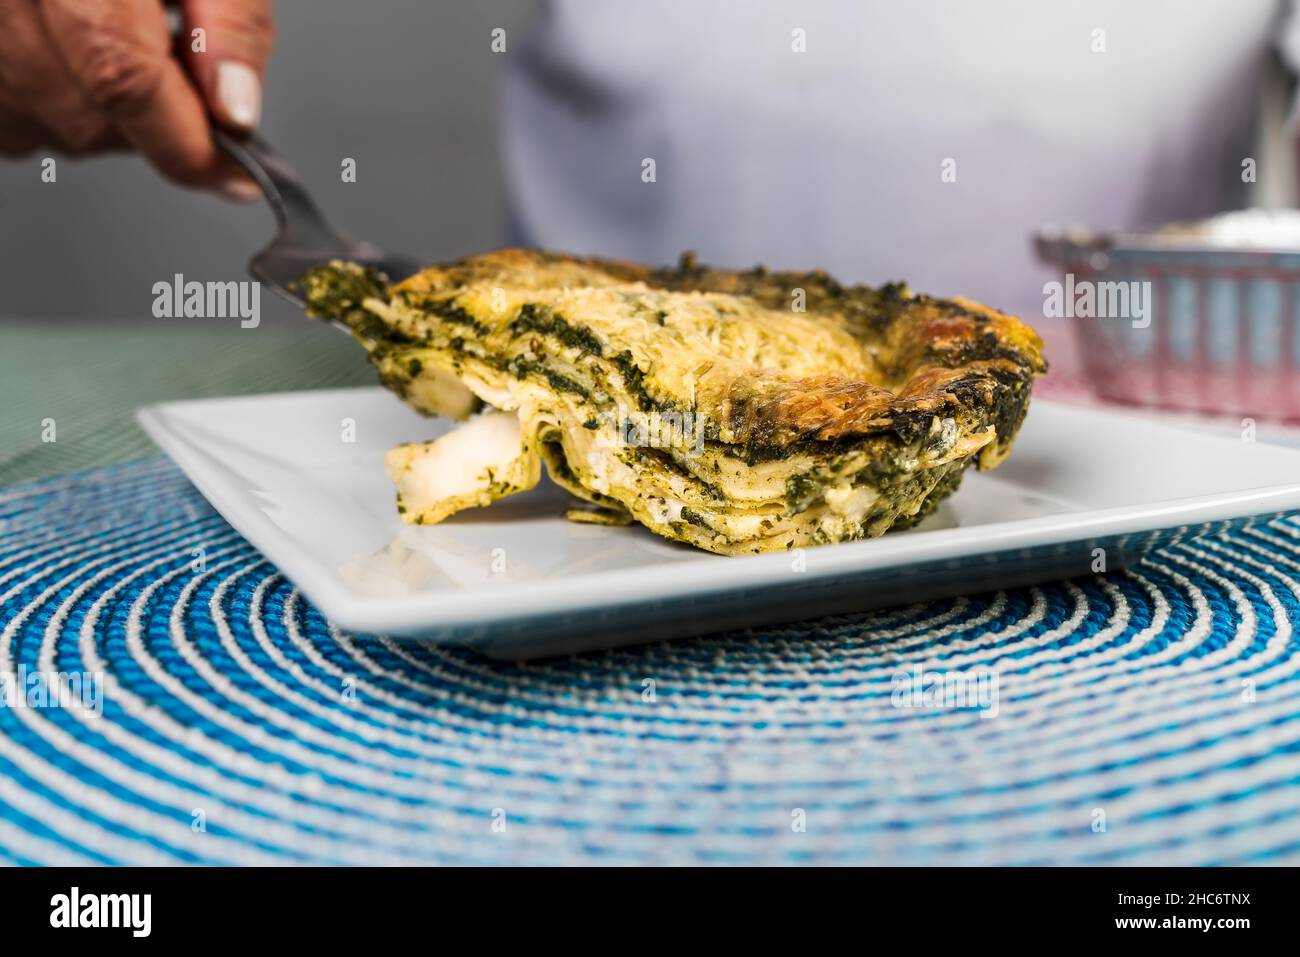 Vue rapprochée d'une main d'une femme adulte servant une portion de lasagne au pesto fraîchement préparée sur une assiette. Banque D'Images